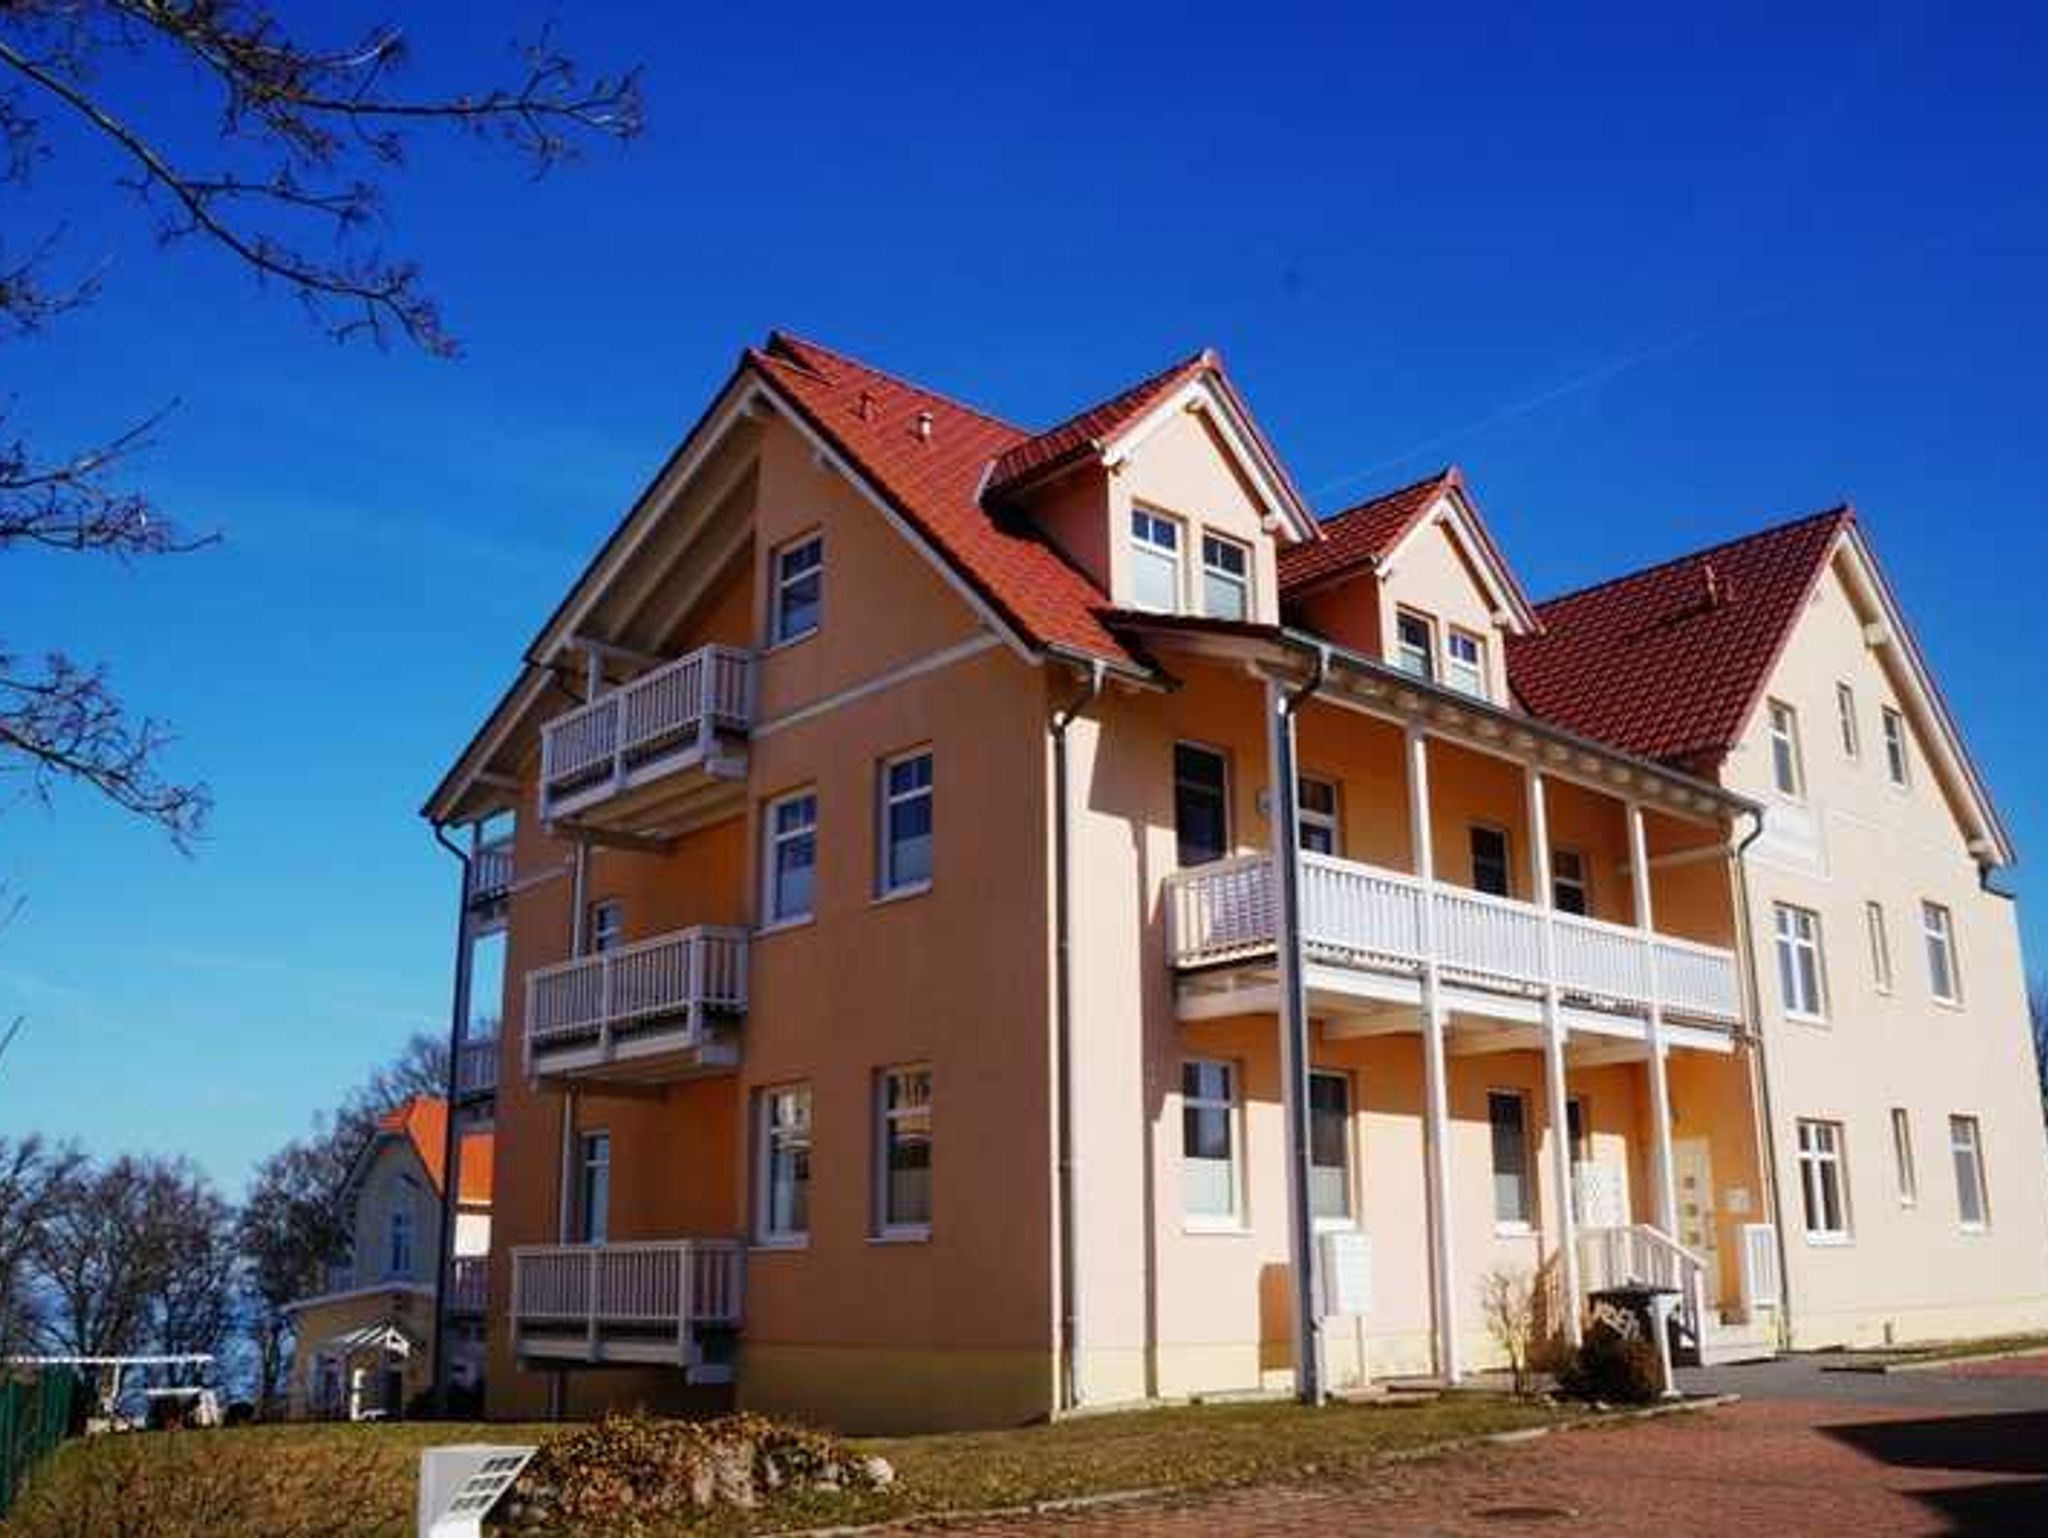 Ferienappartements auf dem Reddevitzer Hövt mit Seeblick